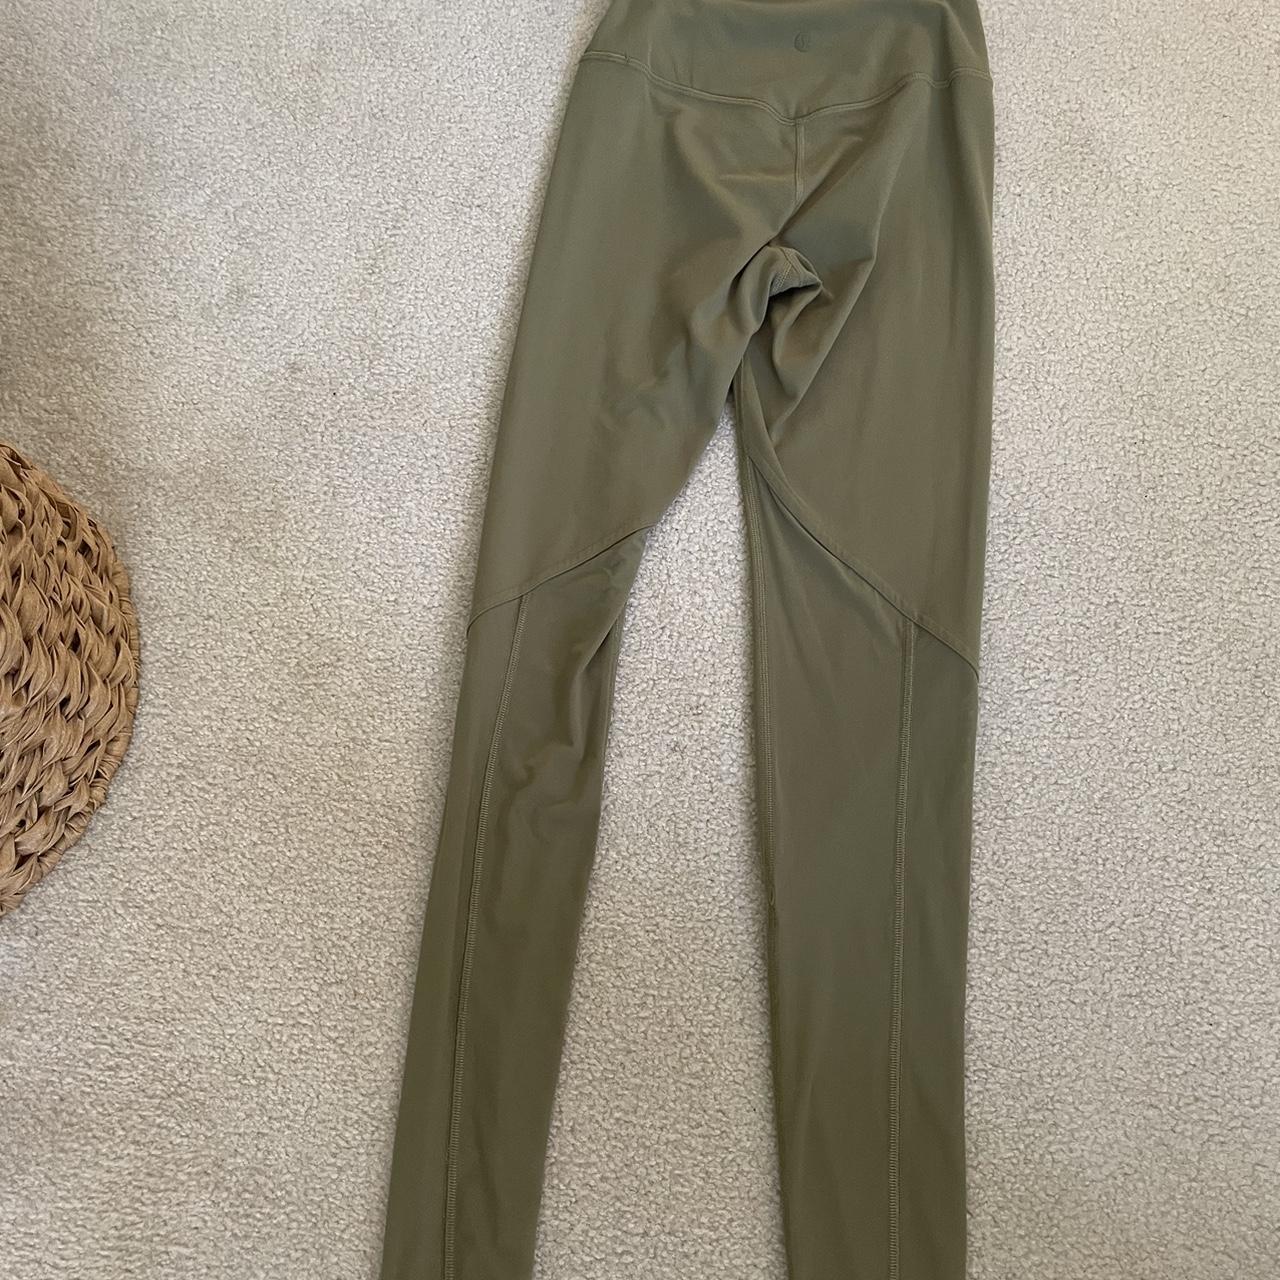 Army Green Lululemon leggings. Has pocket detailing. - Depop